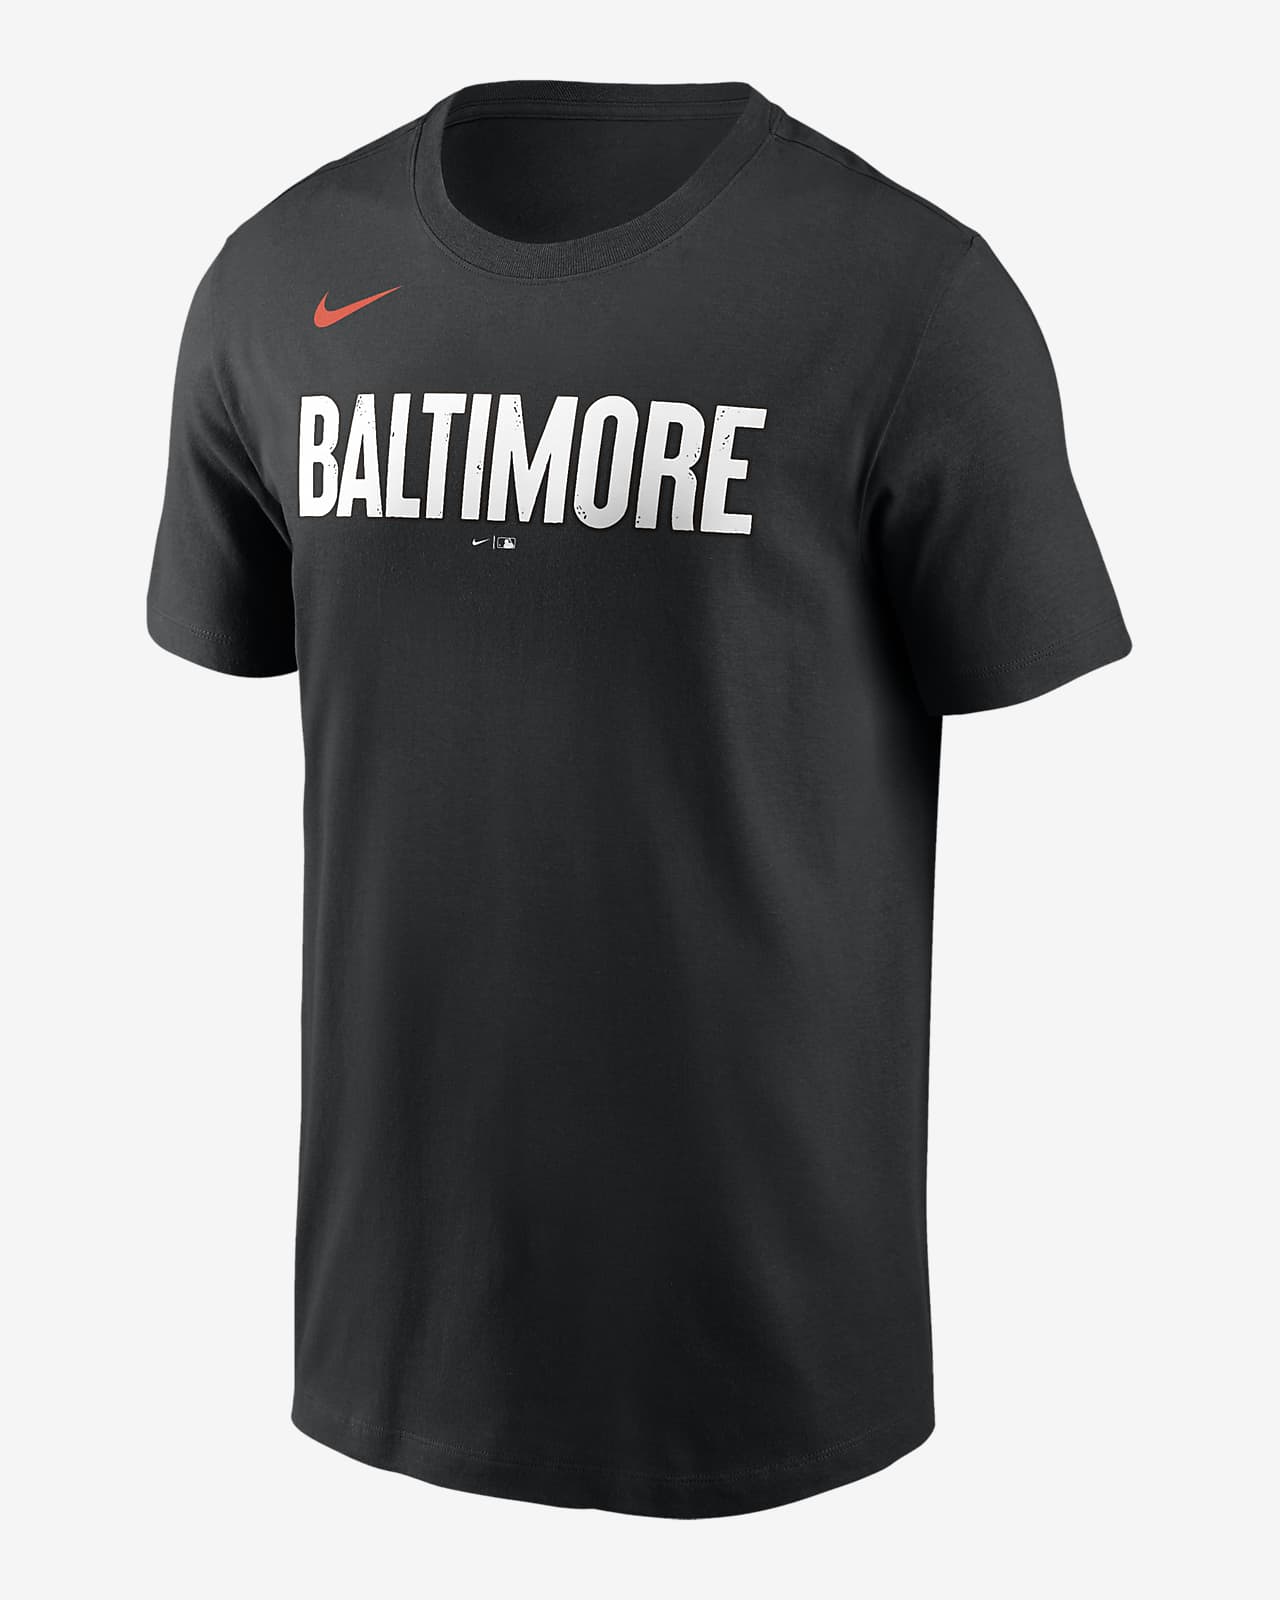 MLB Baltimore Orioles City Connect (Cal Ripken Jr.) Men's T-Shirt